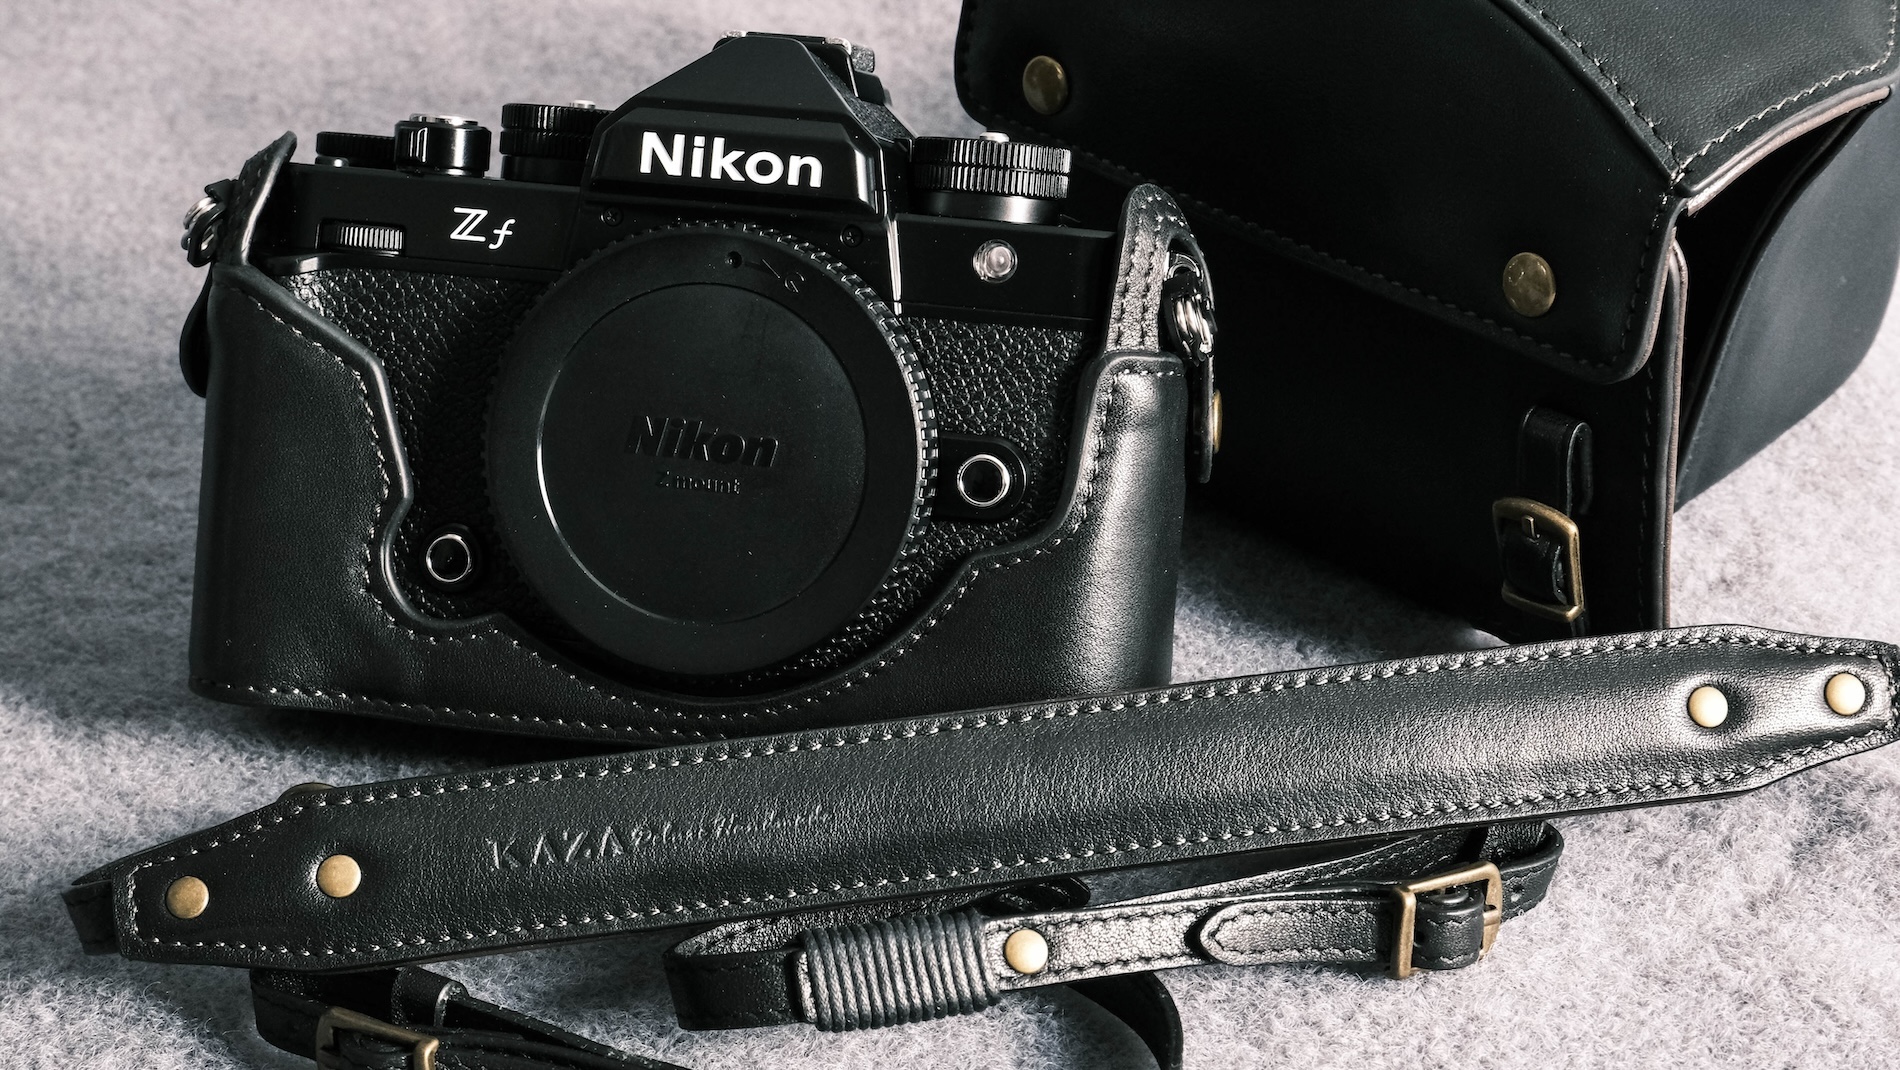 ニコンzfケース, Nikon zf相機皮套, Nikon zf half case,Nikon zf leather case